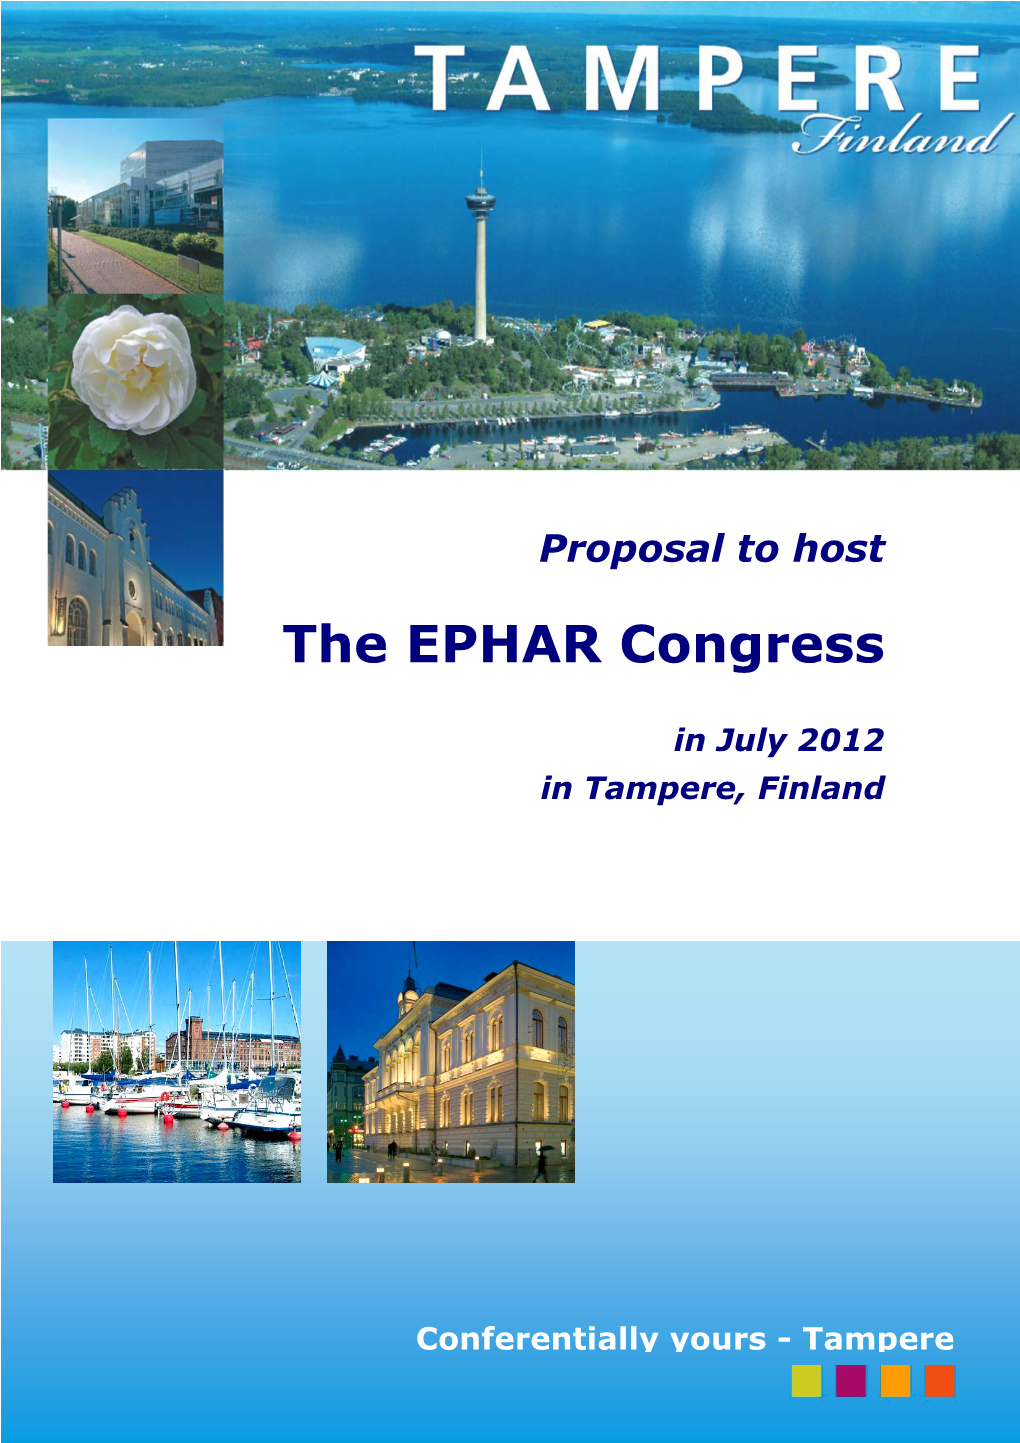 The EPHAR Congress